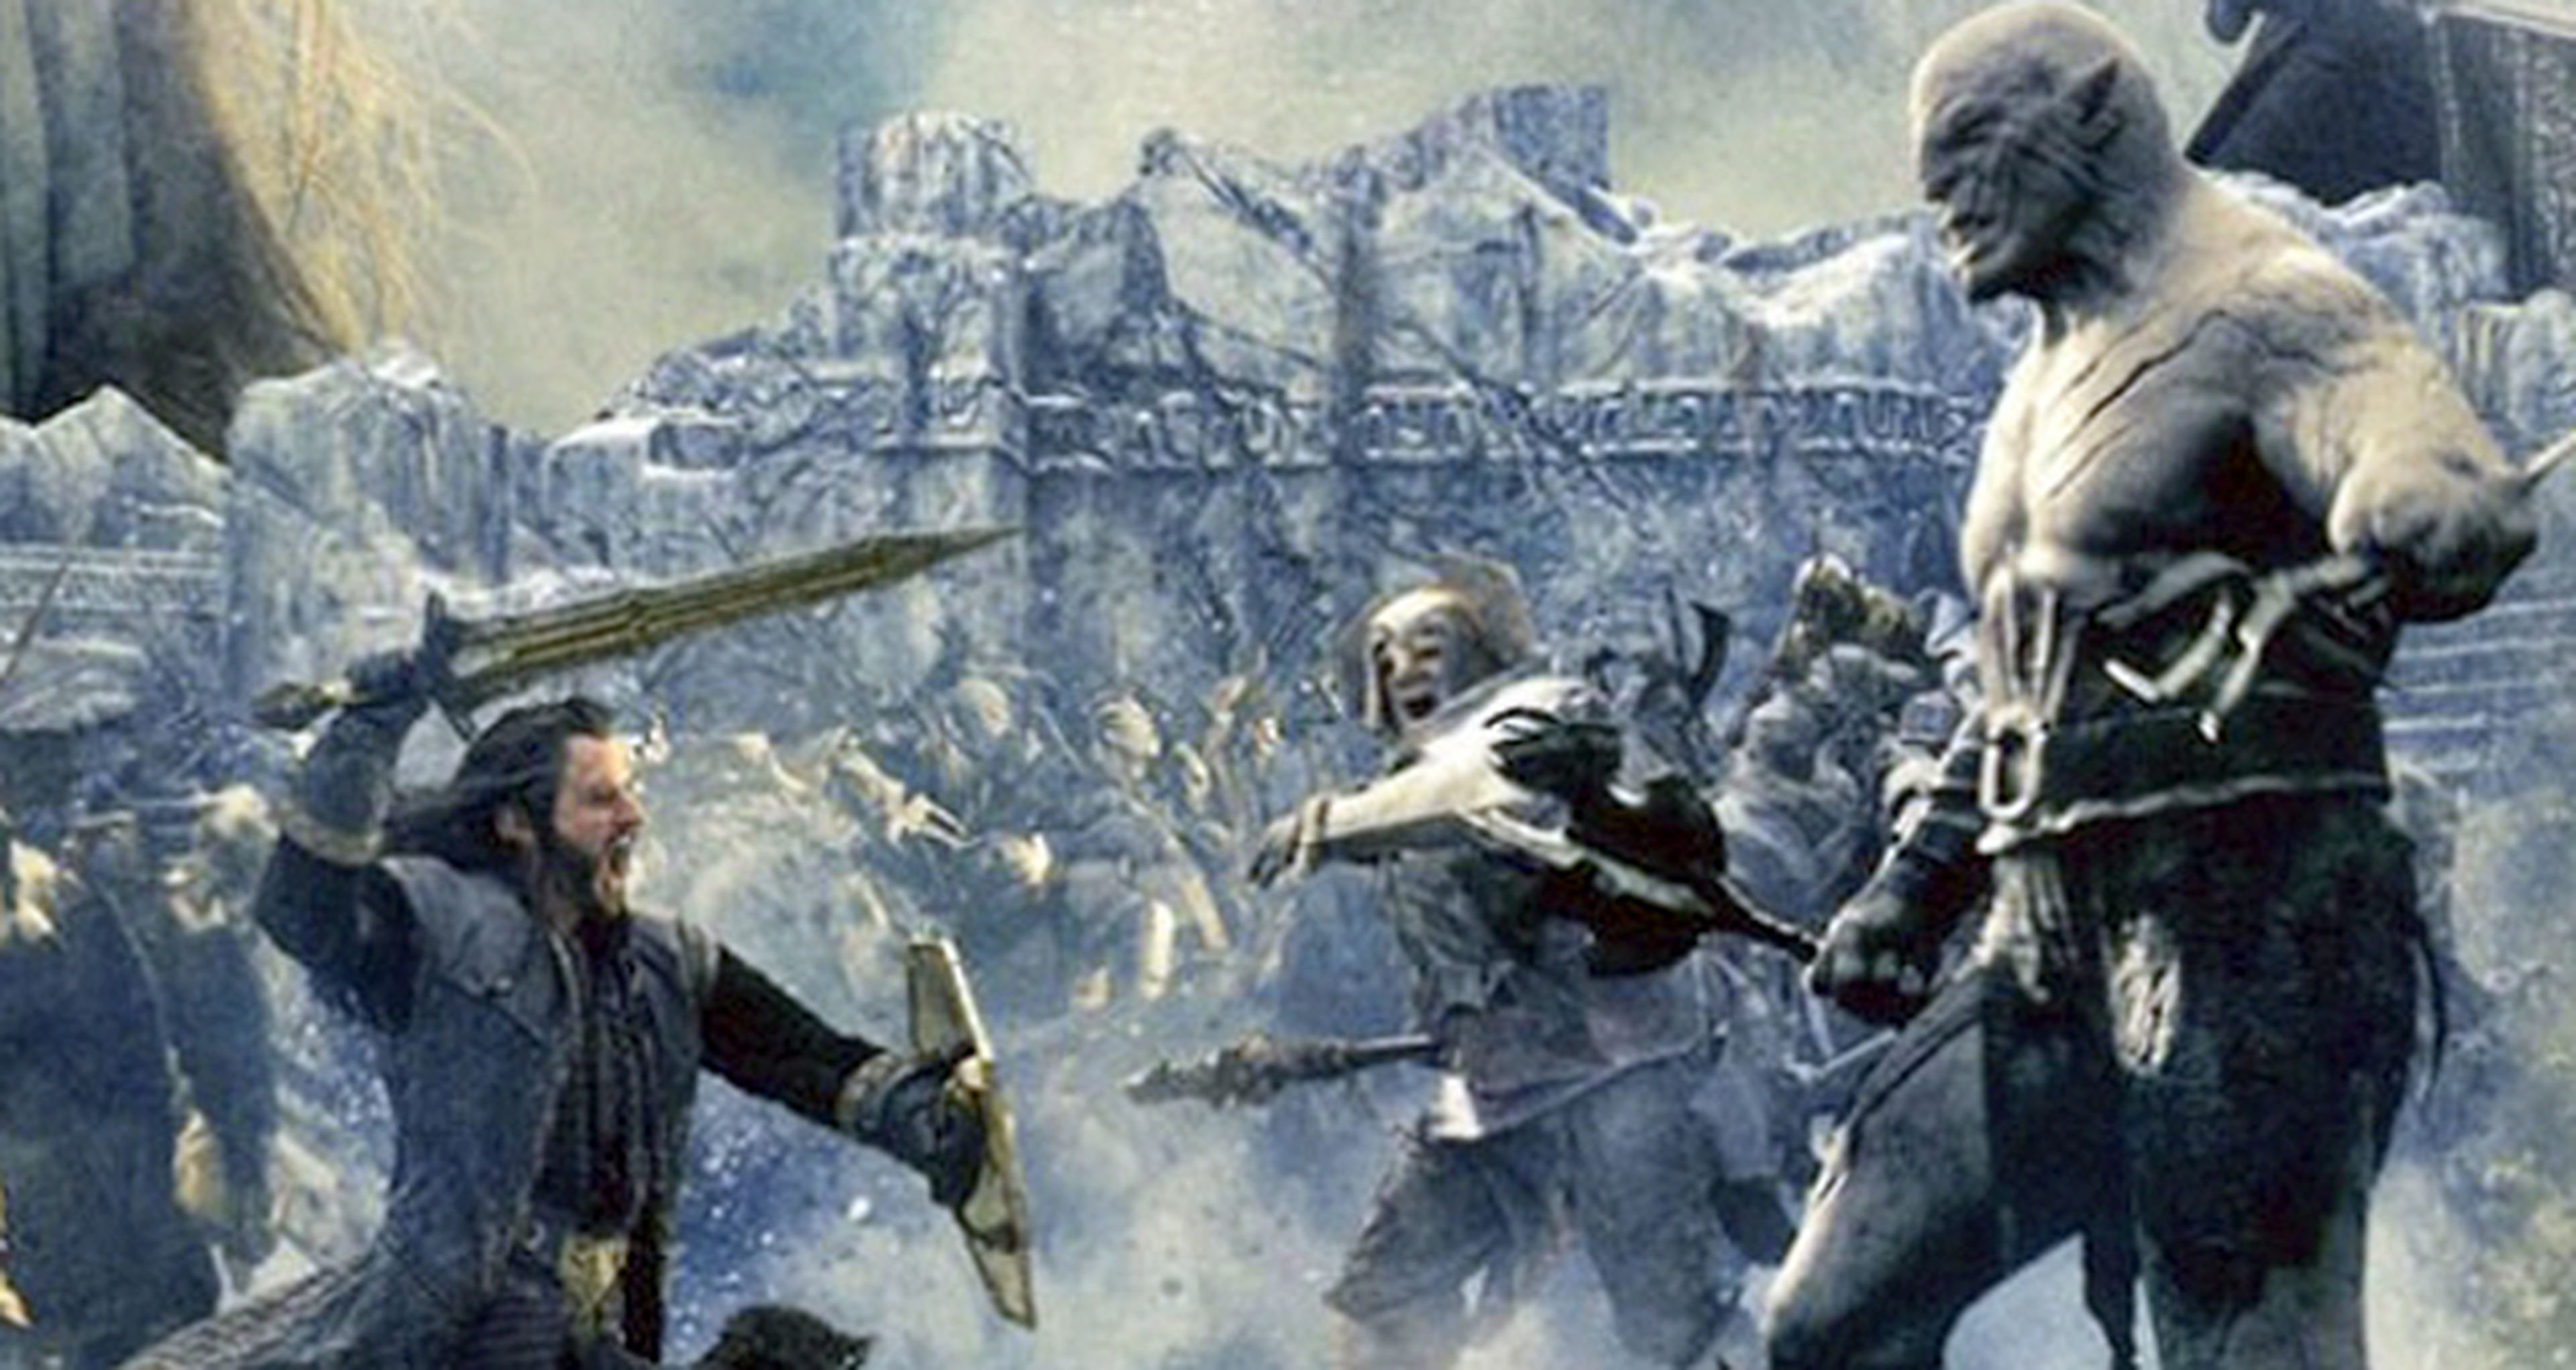 El hobbit: la batalla de los cinco ejércitos presenta nuevas imágenes